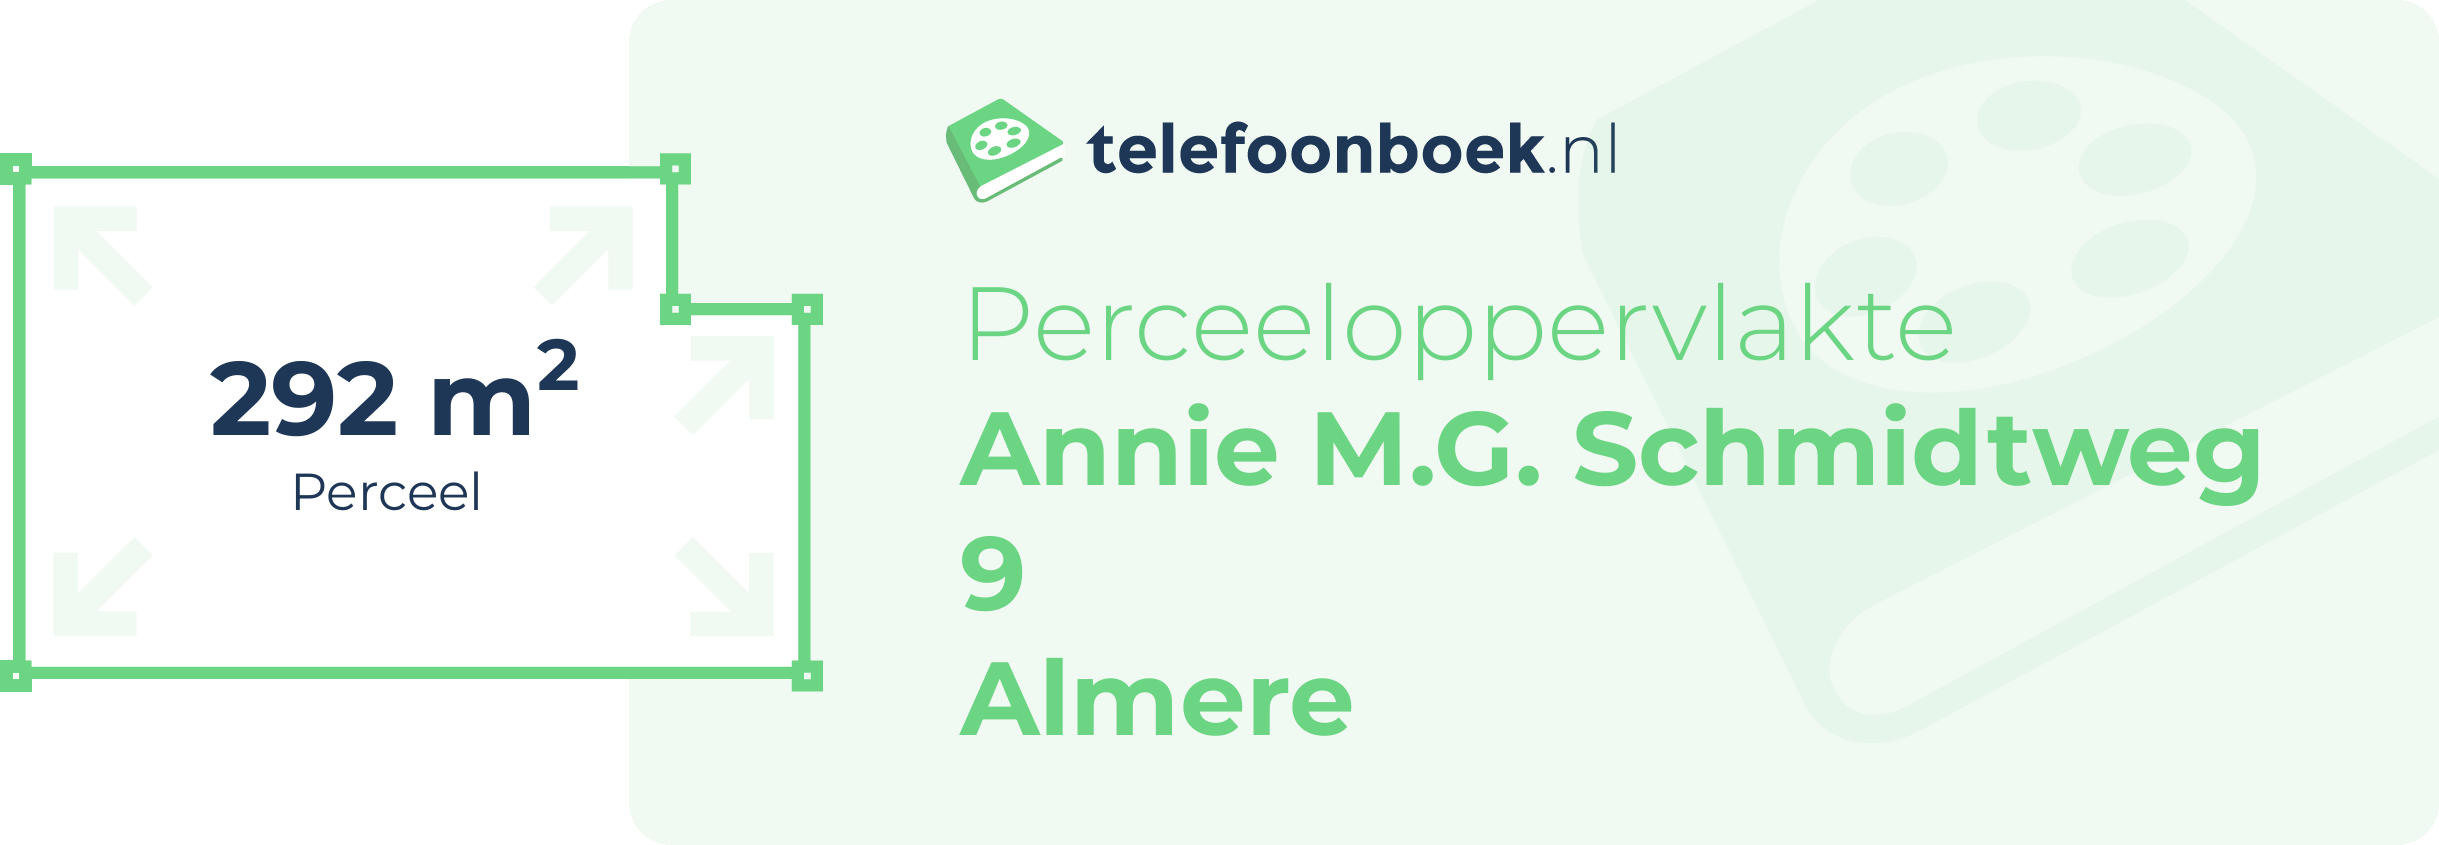 Perceeloppervlakte Annie M.G. Schmidtweg 9 Almere